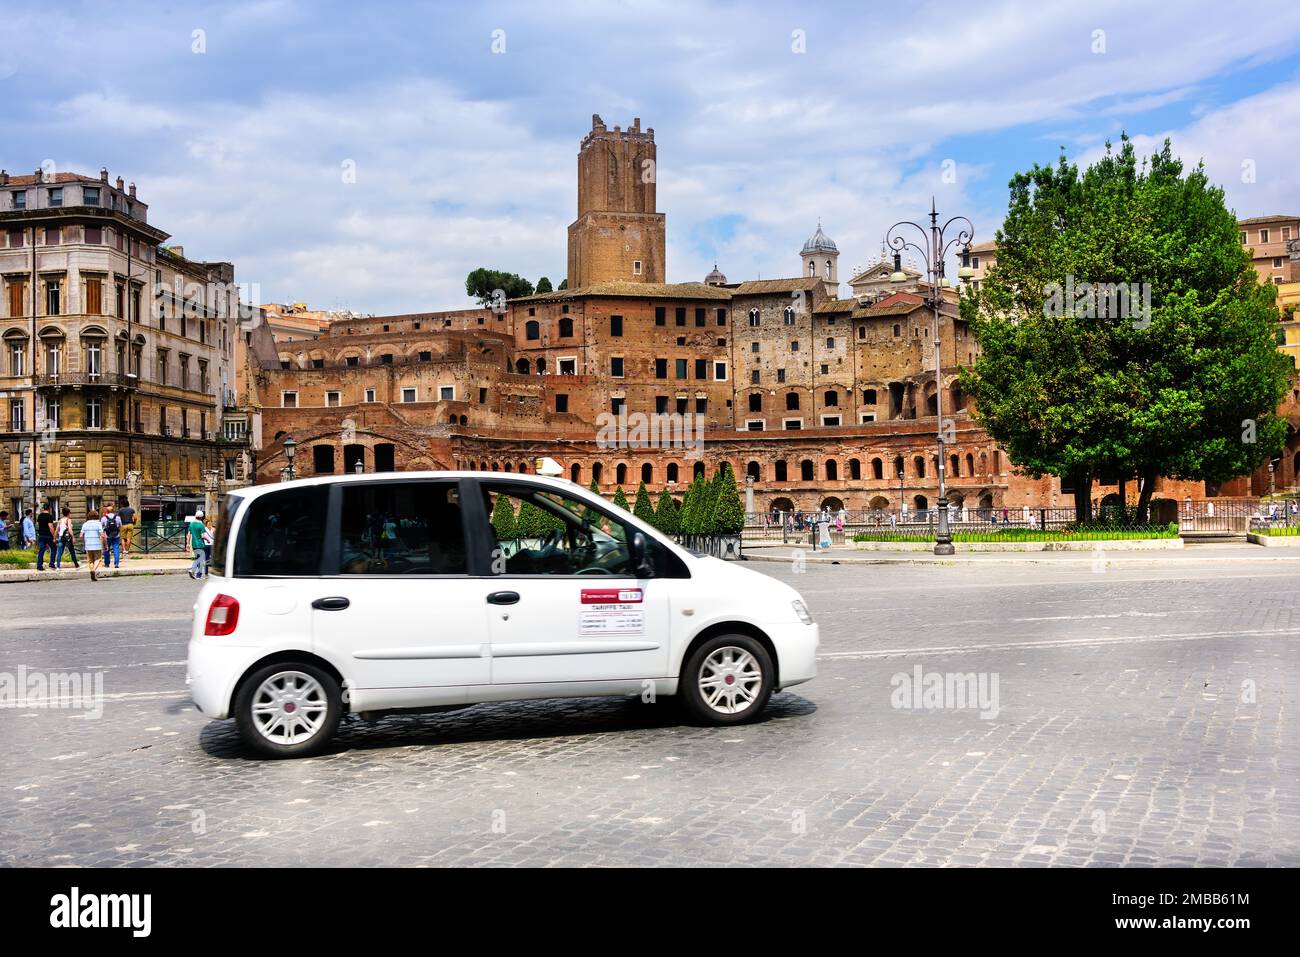 Roma, Italia - 10 de junio de 2016: Taxistas en la calle concurrida con peatones y alineados con la arquitectura romana antigua. Foto de stock